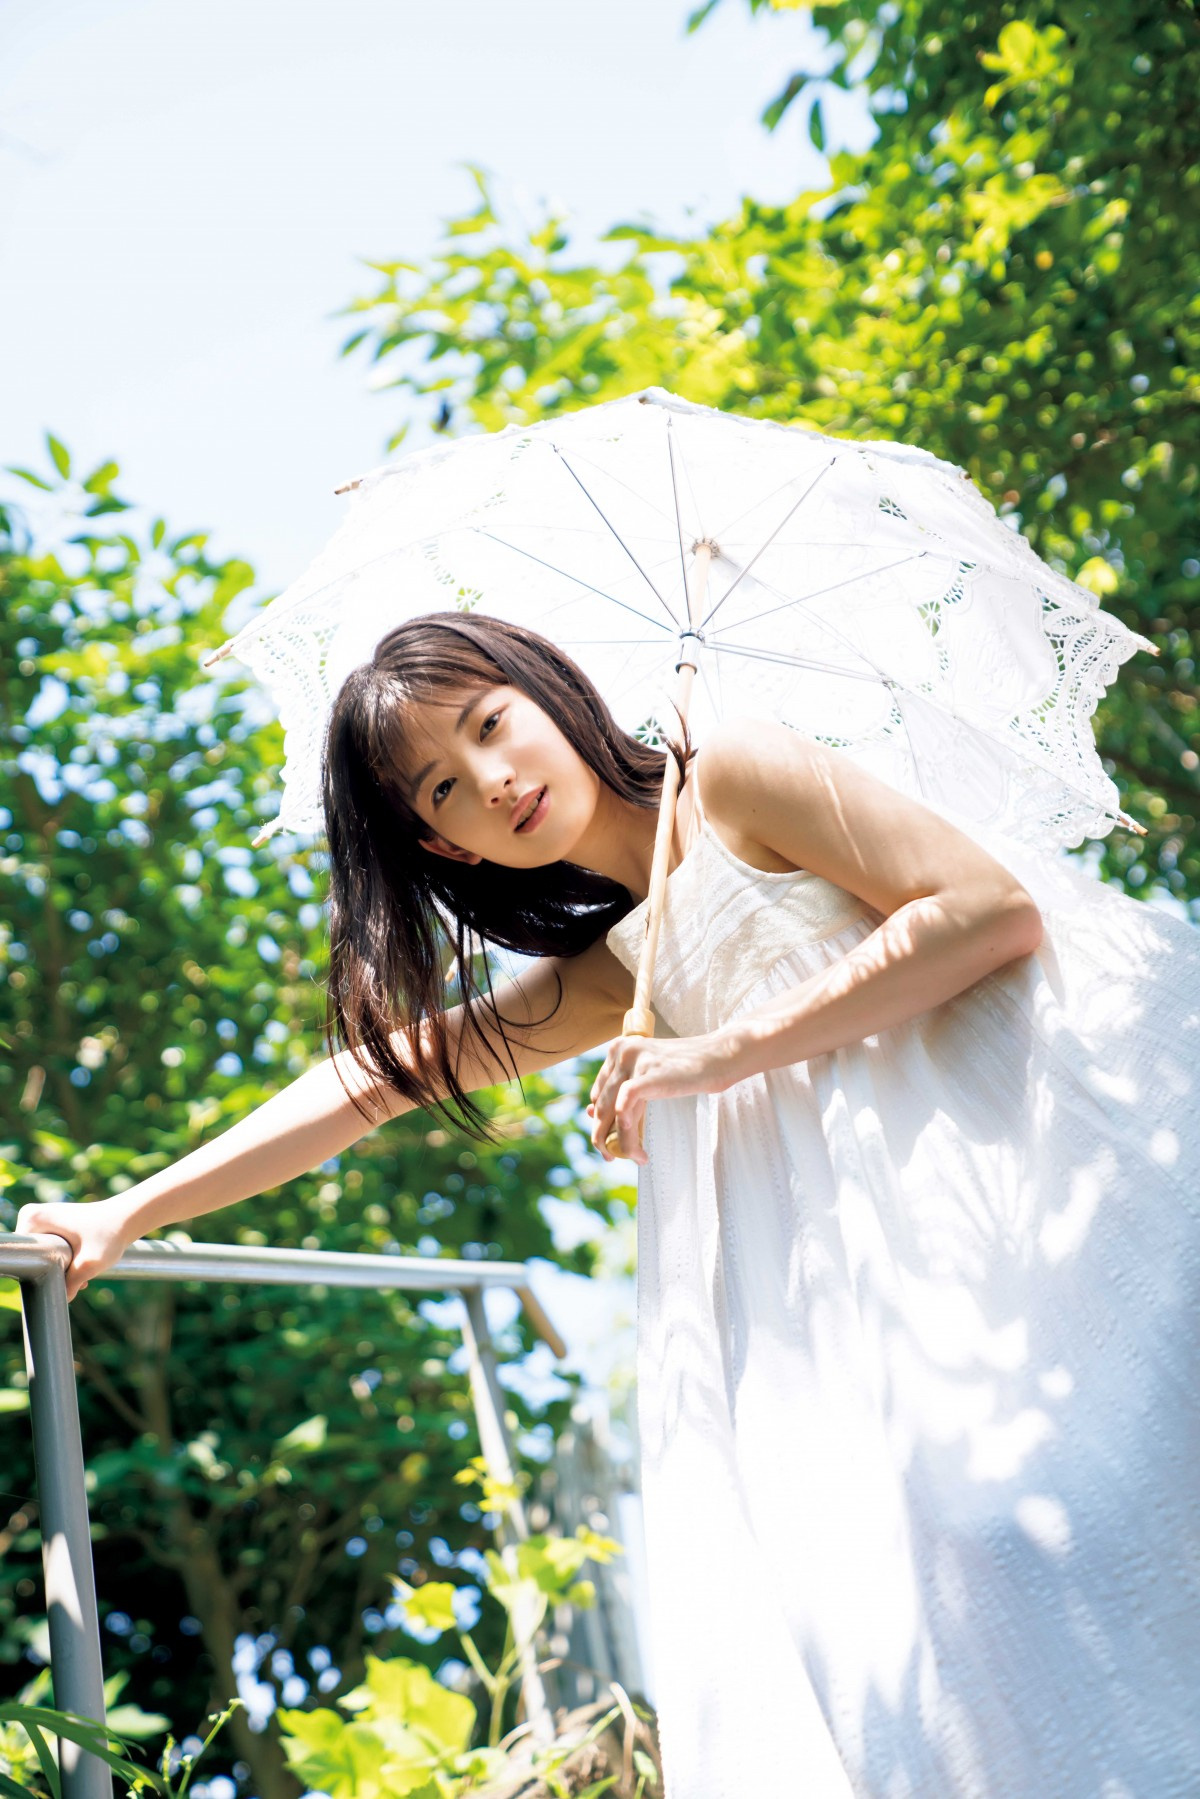 モー娘 北川莉央 初水着ショットに挑戦の写真集8位 フレッシュな美くびれ公開 Oricon News